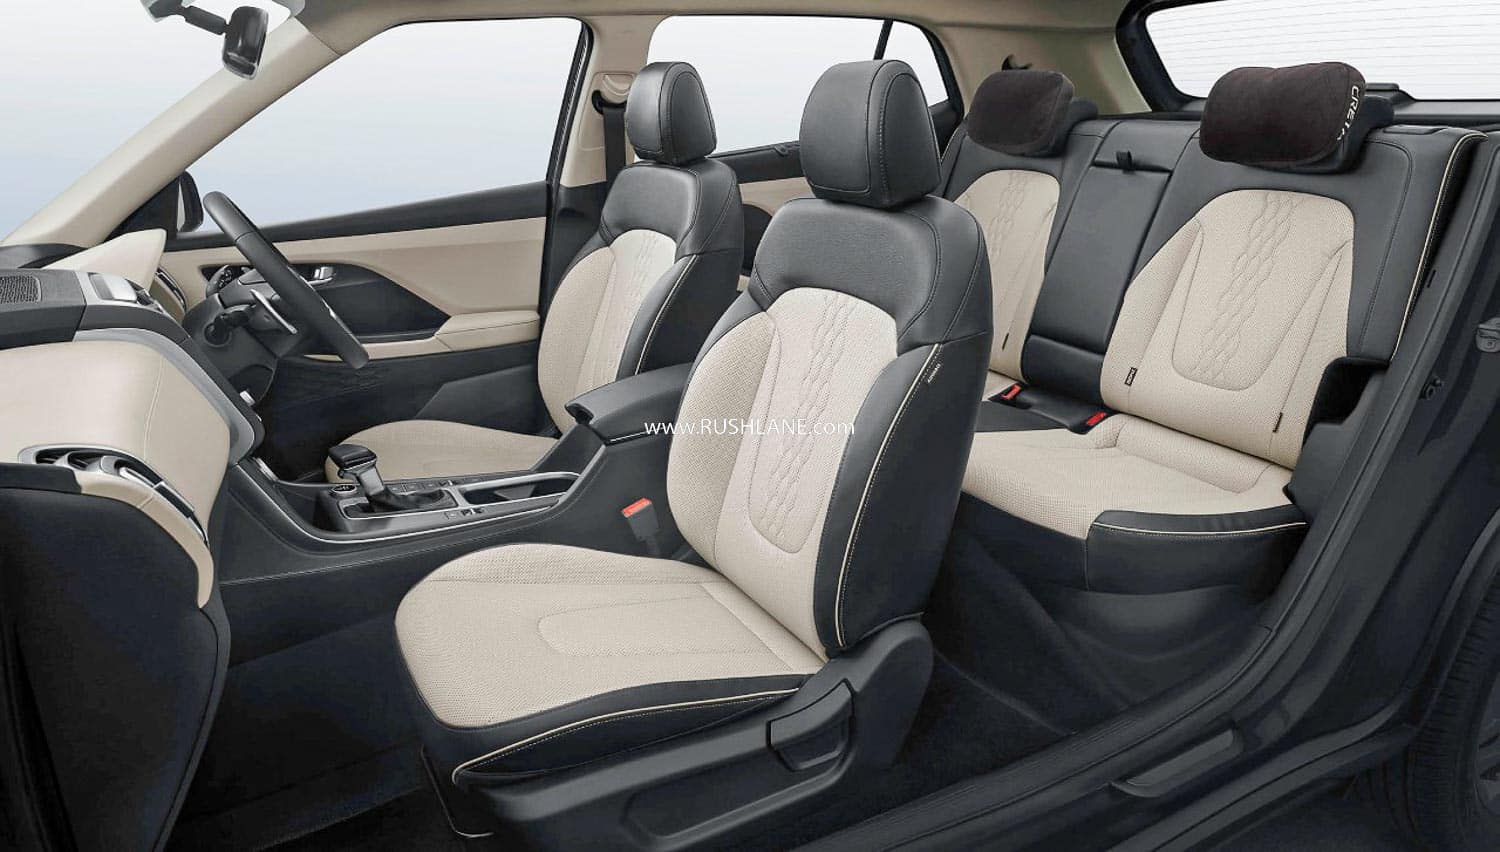 2020 Hyundai Creta seats